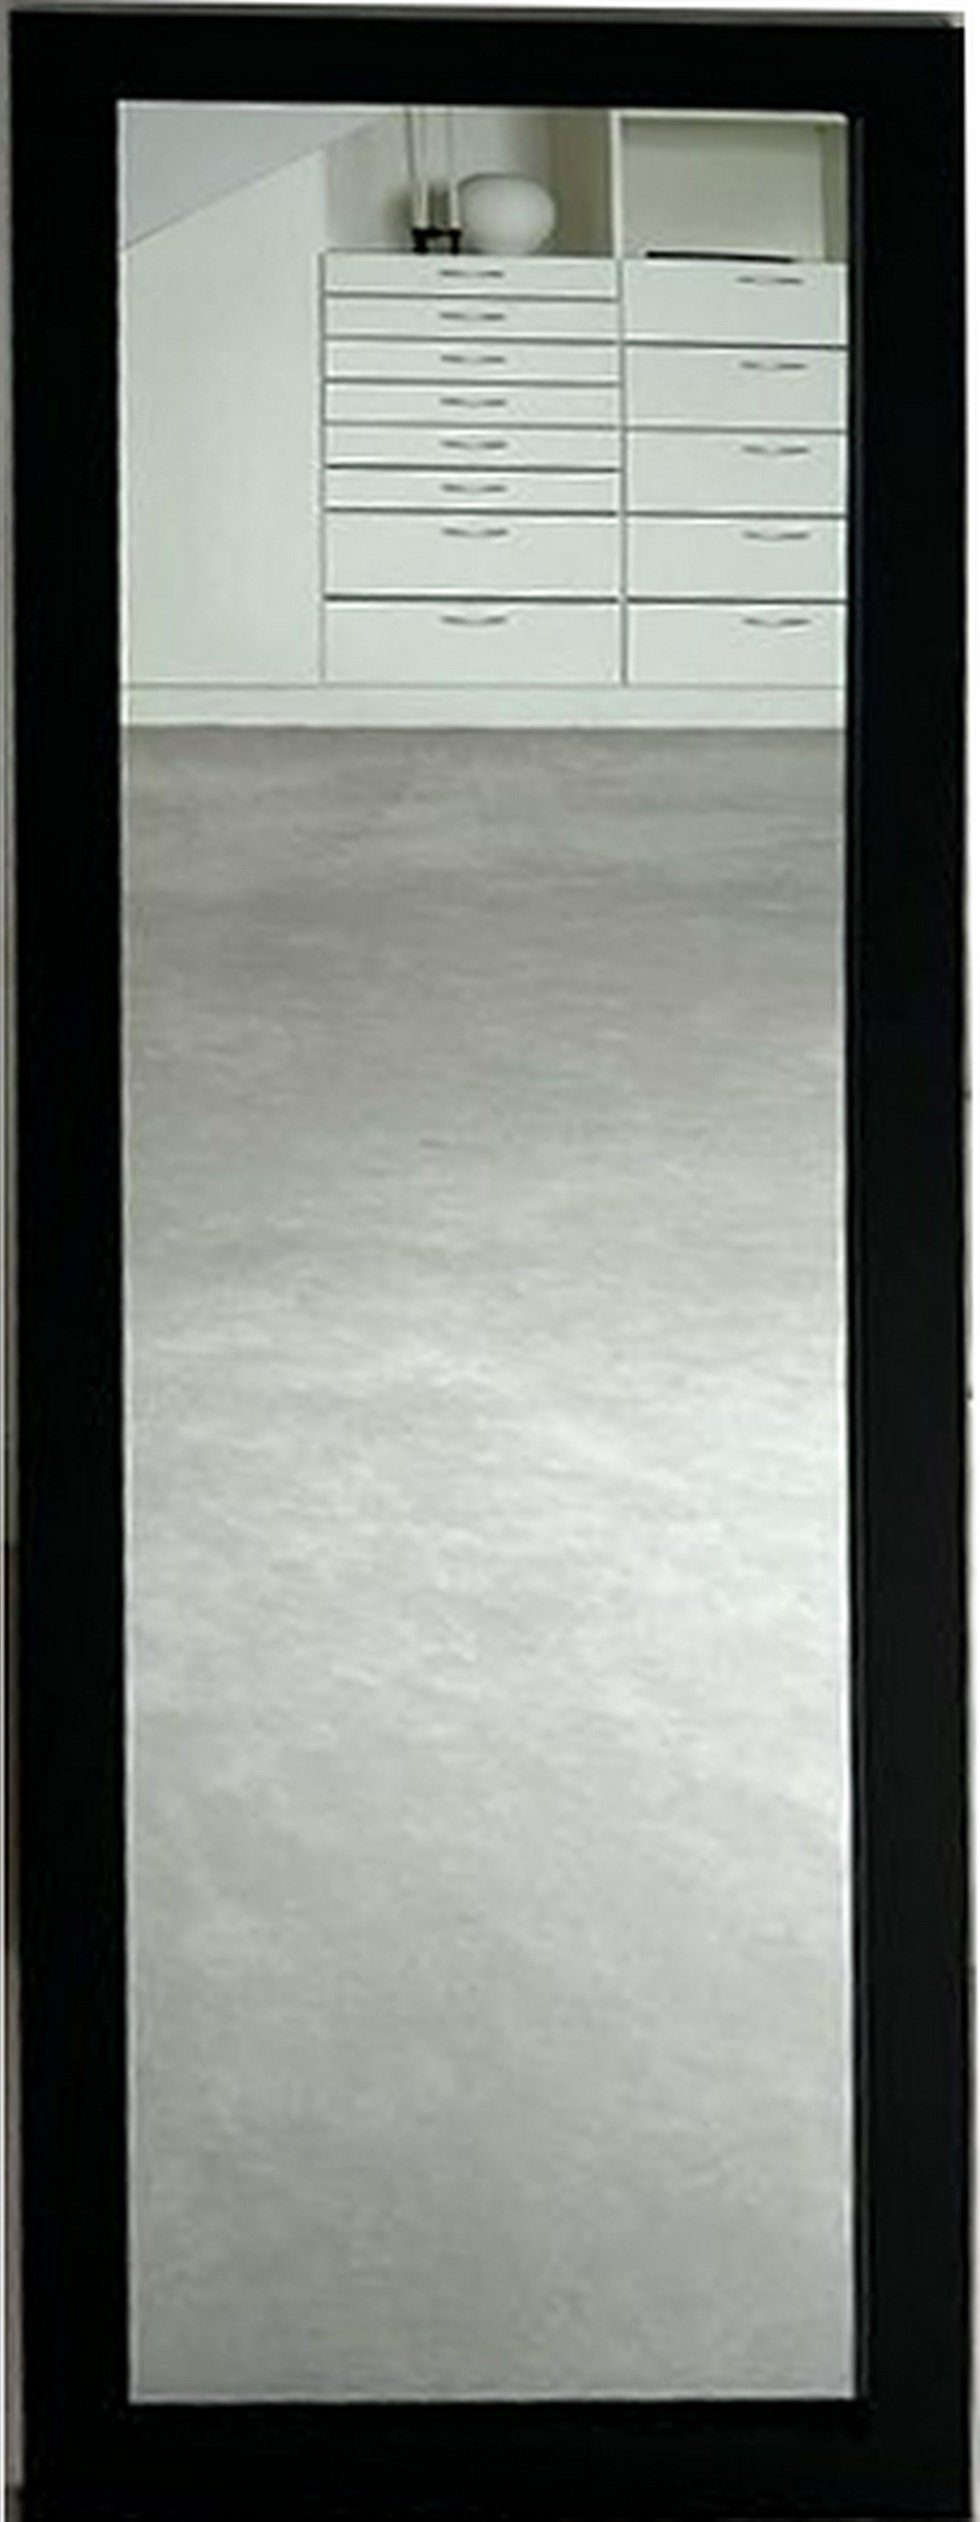 Deko-Werk 24 Your-Homestyle 40 x Eiche Rahmen, 130 Kathi Wandspiegel Ganzkörperspiegel cm schwarz Farbe Wandspiegel Holz mit